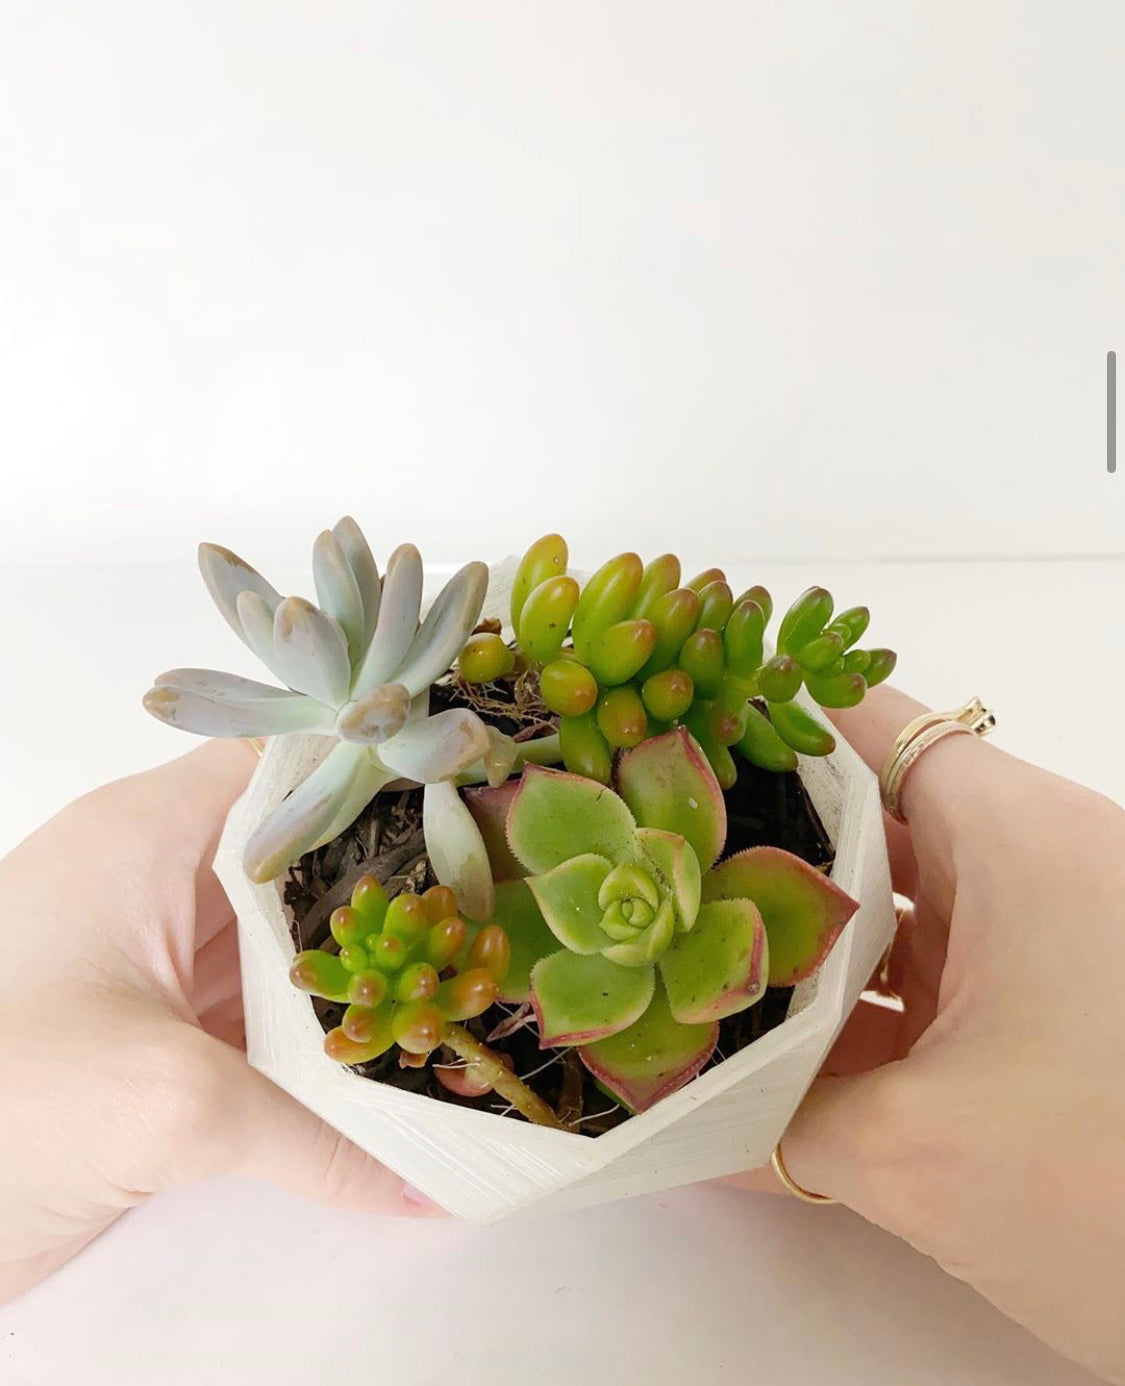 3D Printable Succulent Pots | Geometric Set